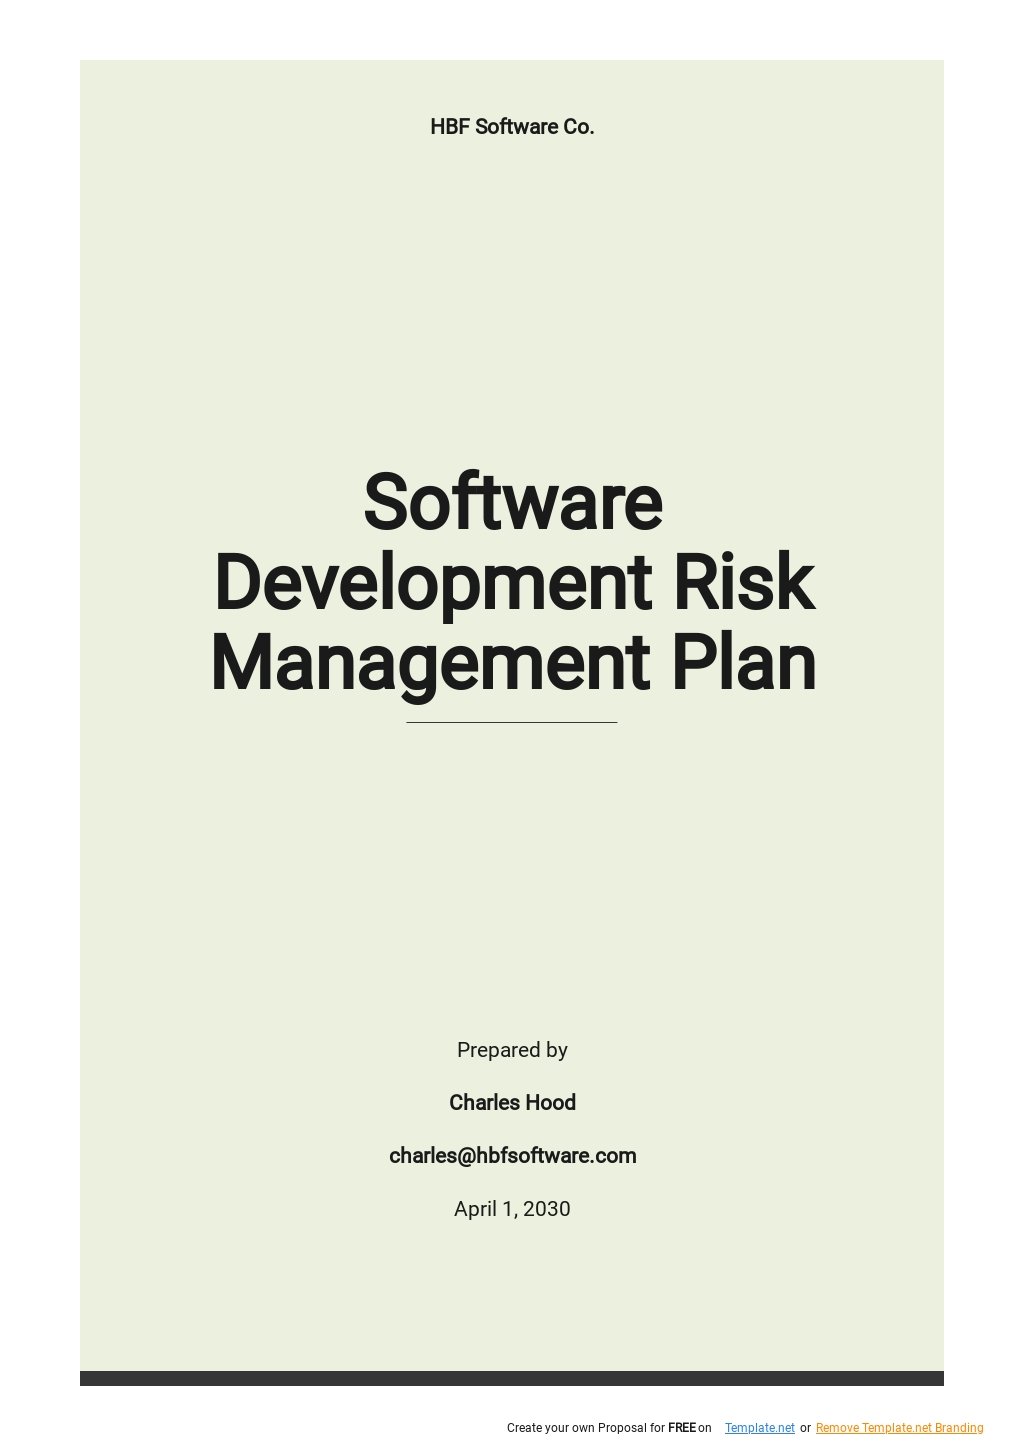 Free Software Development Risk Management Plan Template